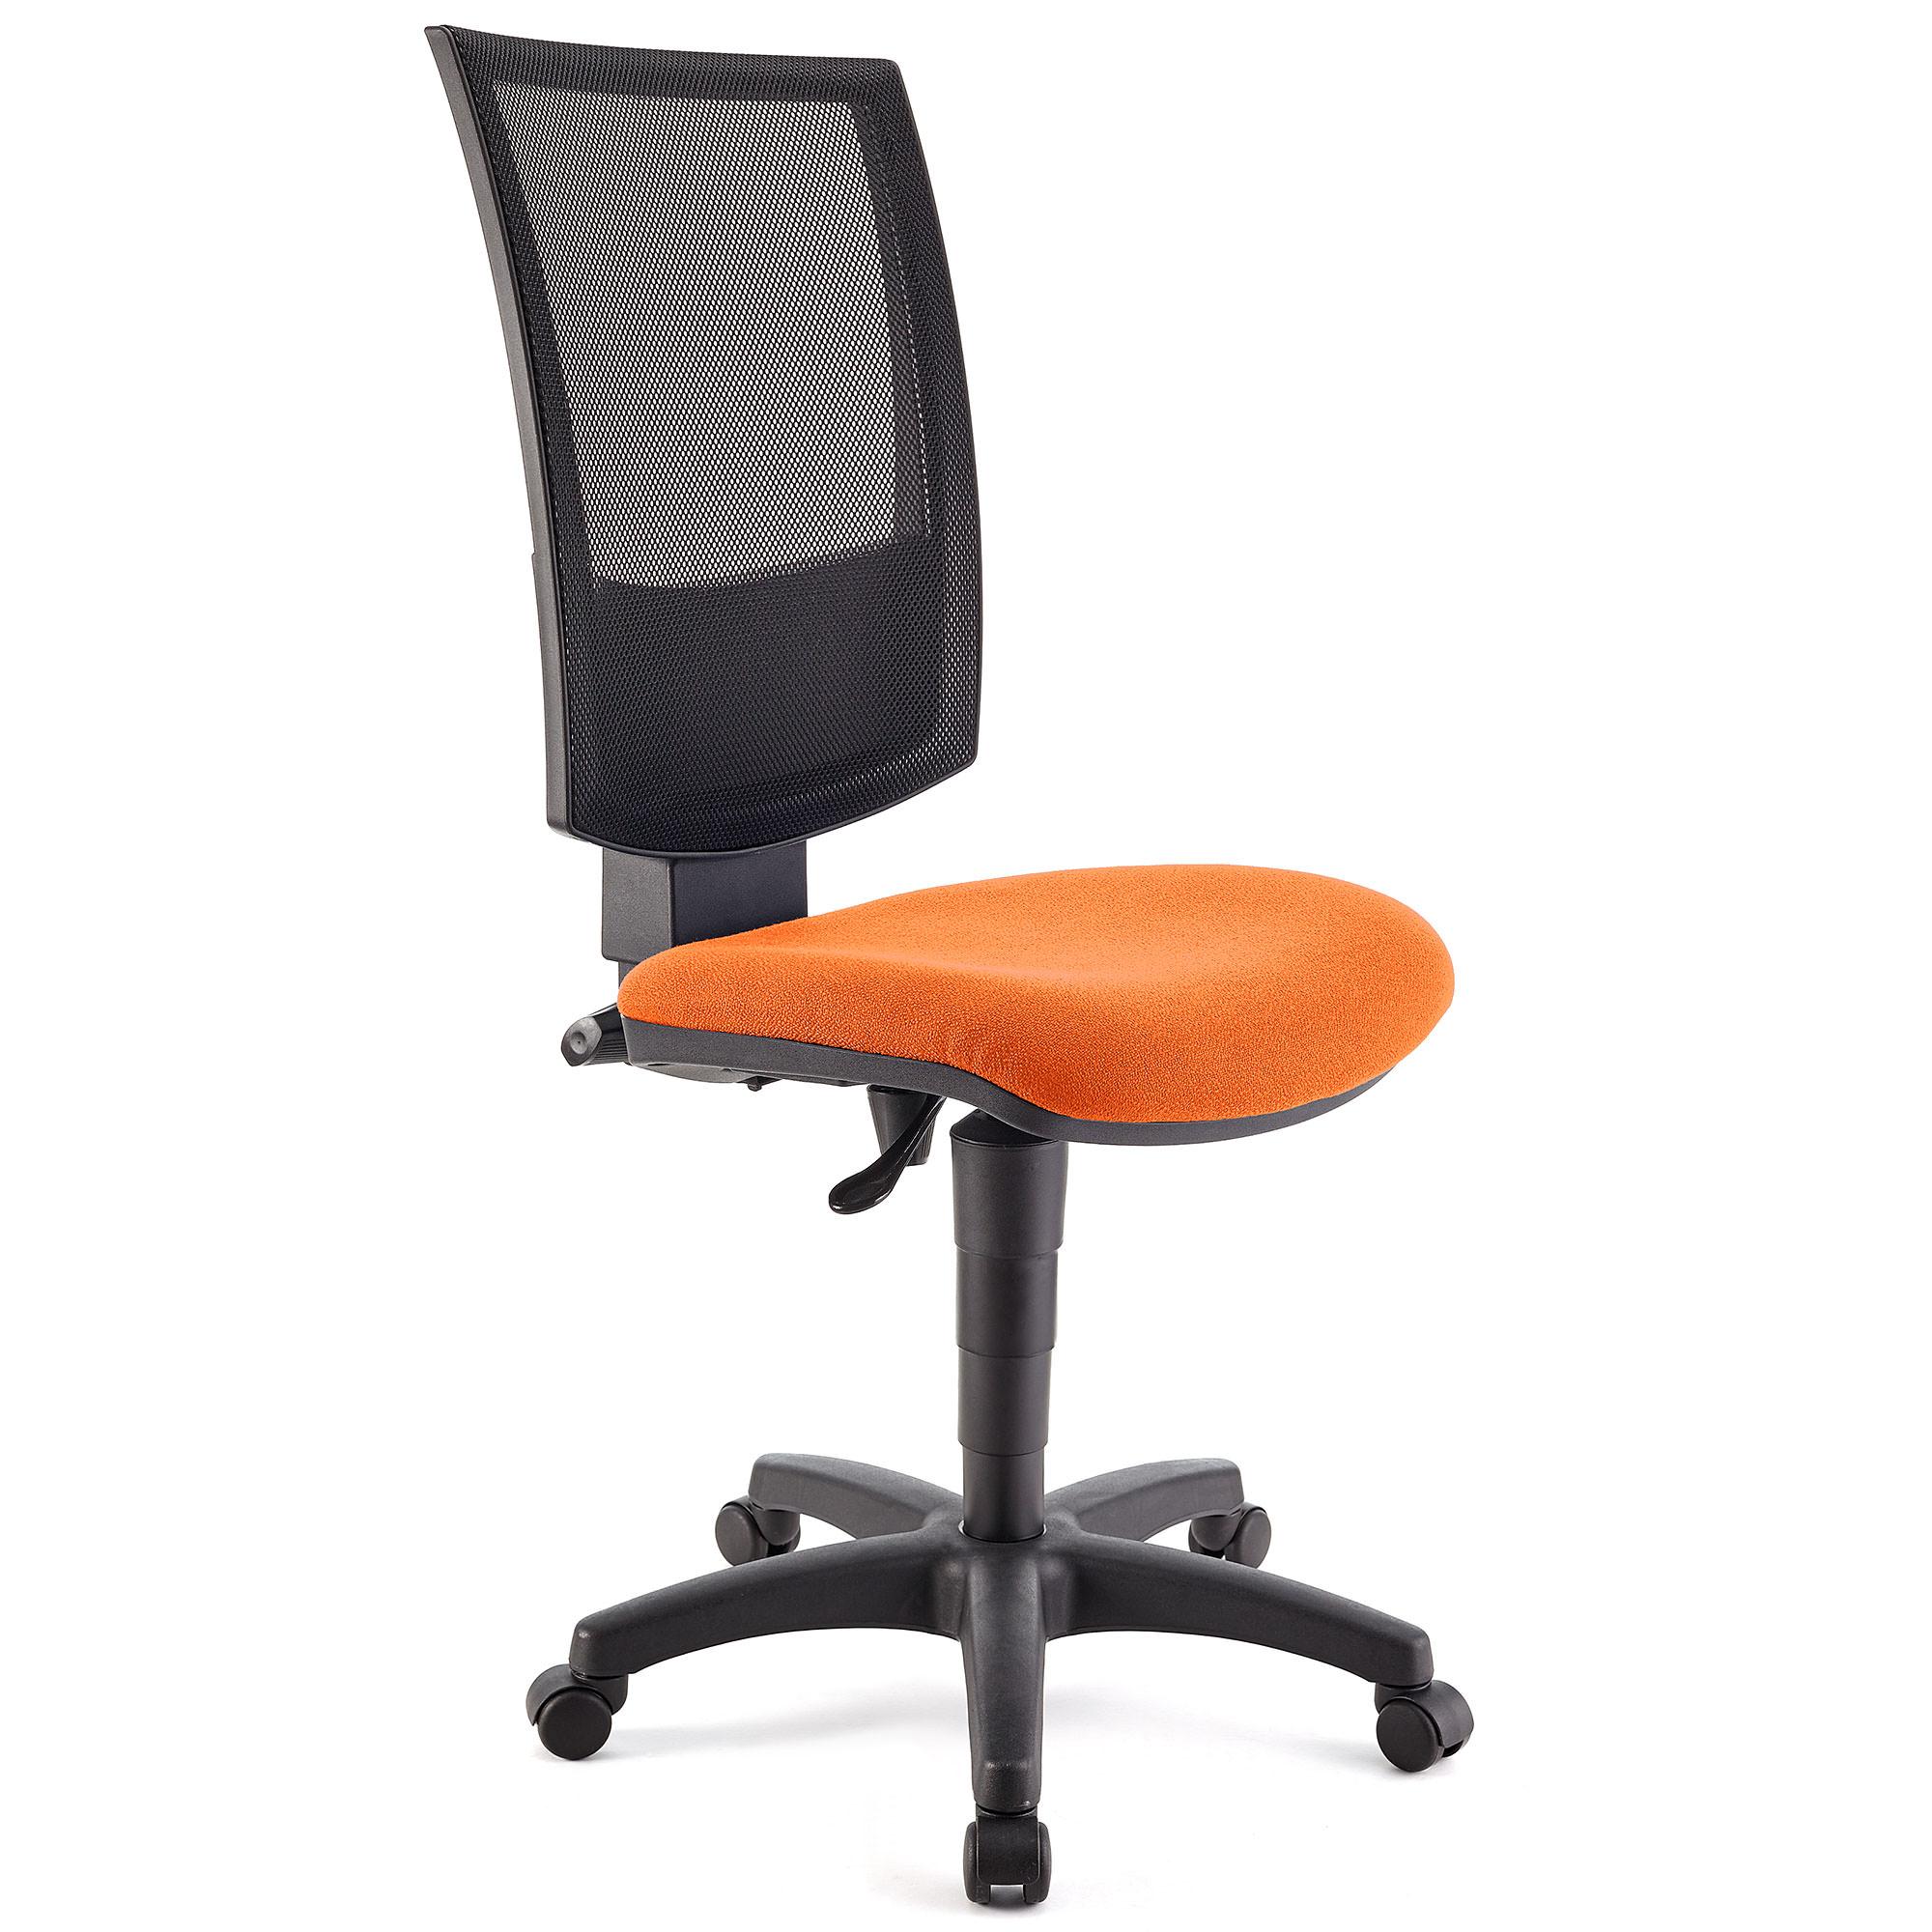 Bürostuhl PANDORA OHNE ARMLEHNE, verstellbare Rückenlehne mit Netzbezug, dicke Polsterung, Farbe Orange